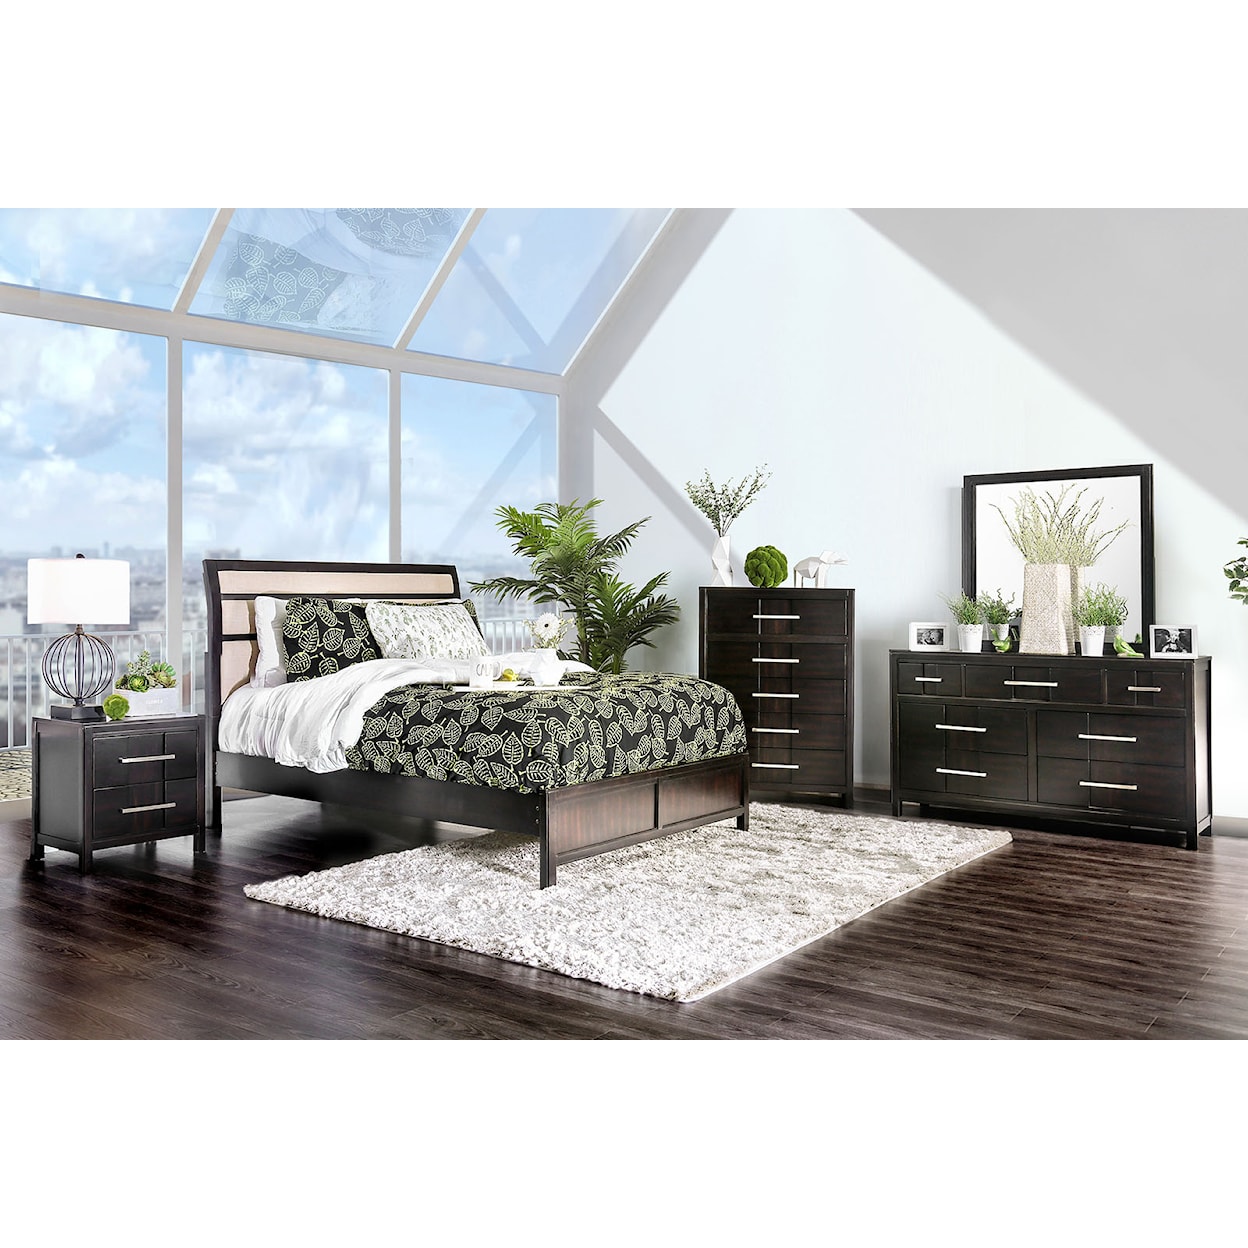 Furniture of America Berenice 5-Piece Queen Bedroom Set